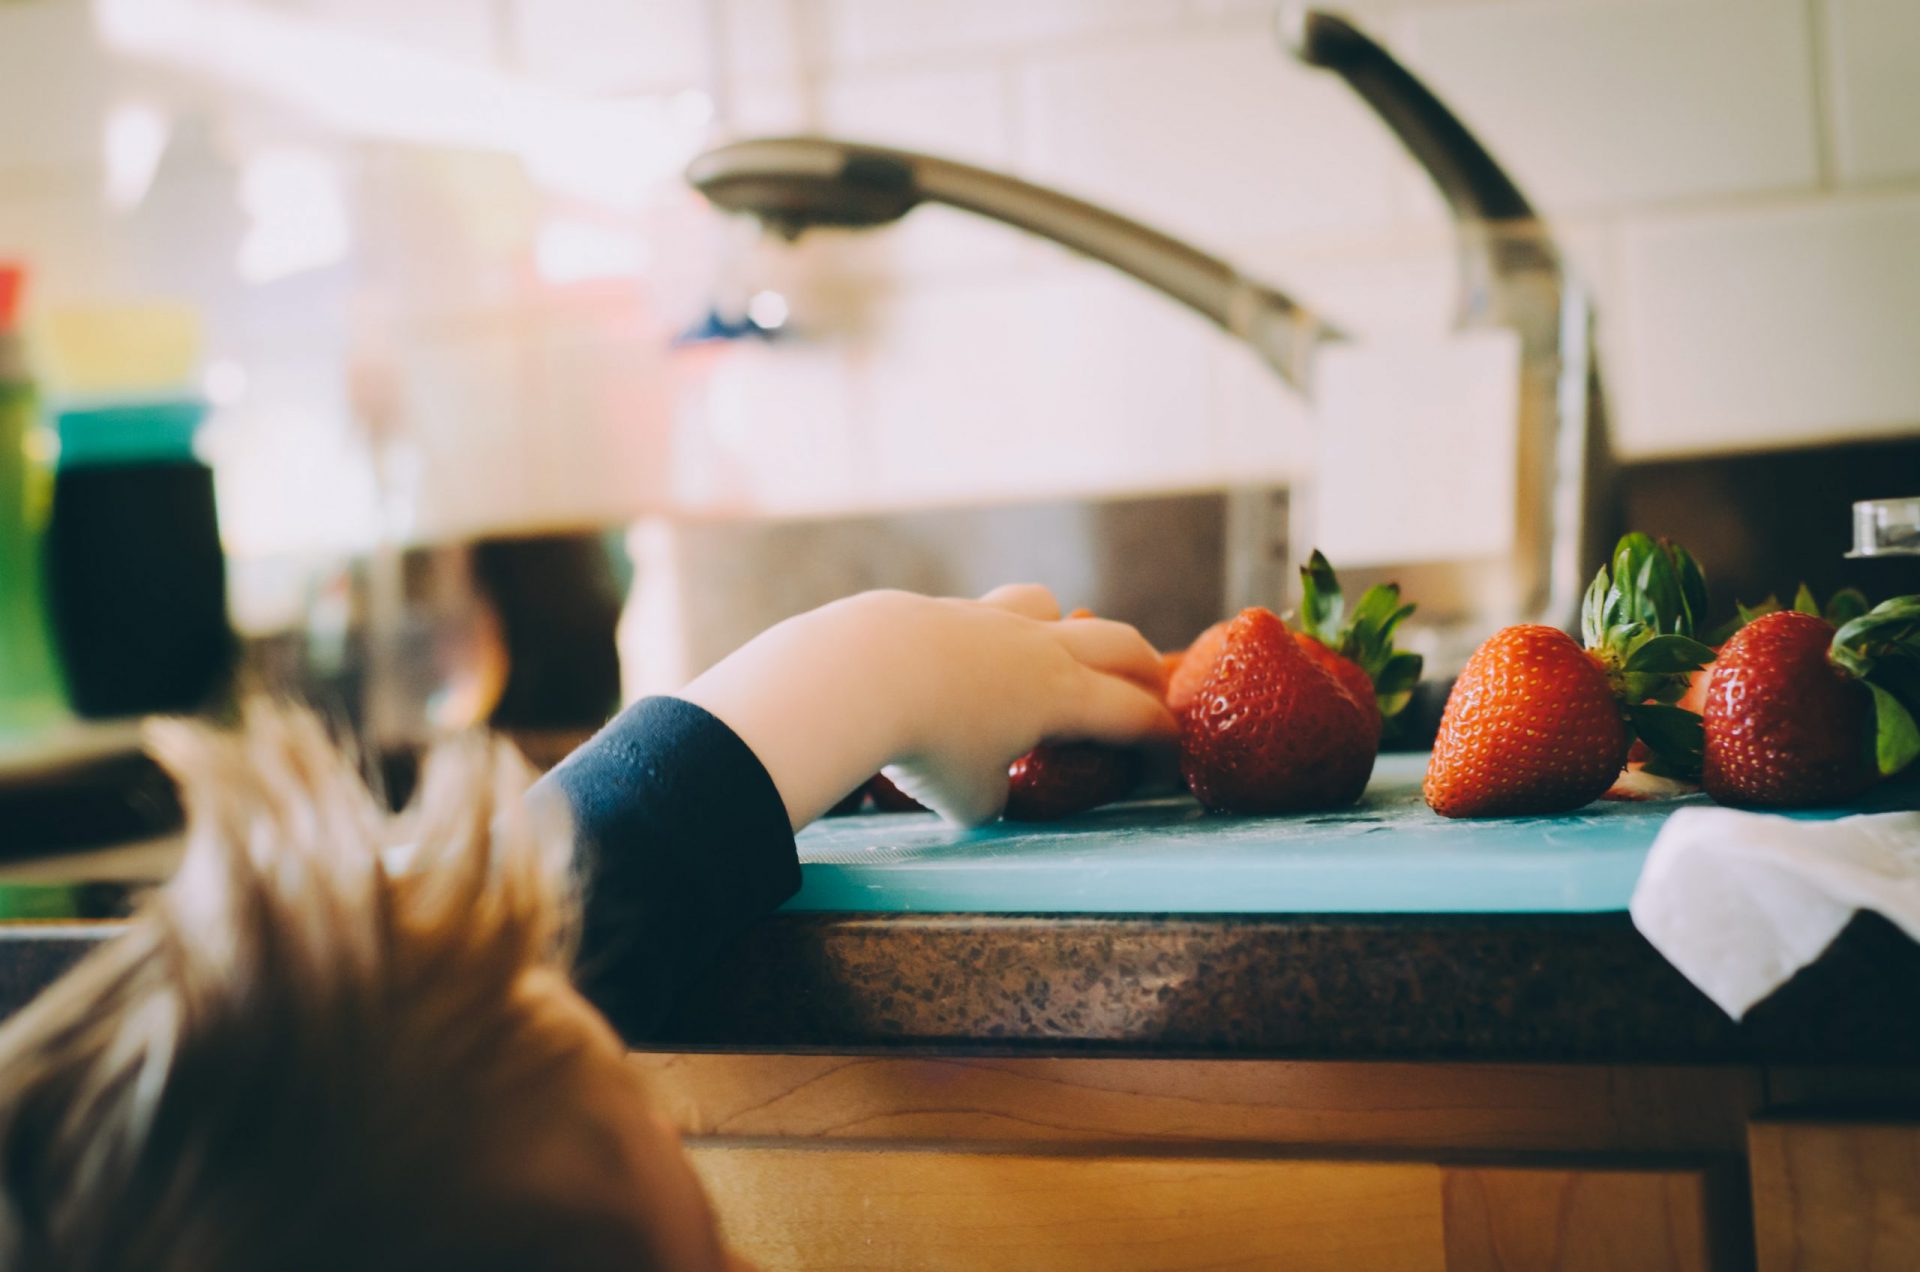 Ein Kind greift nach Erdbeeren, die neben dem Spülbescken auf einer Küchenanrichte liegen